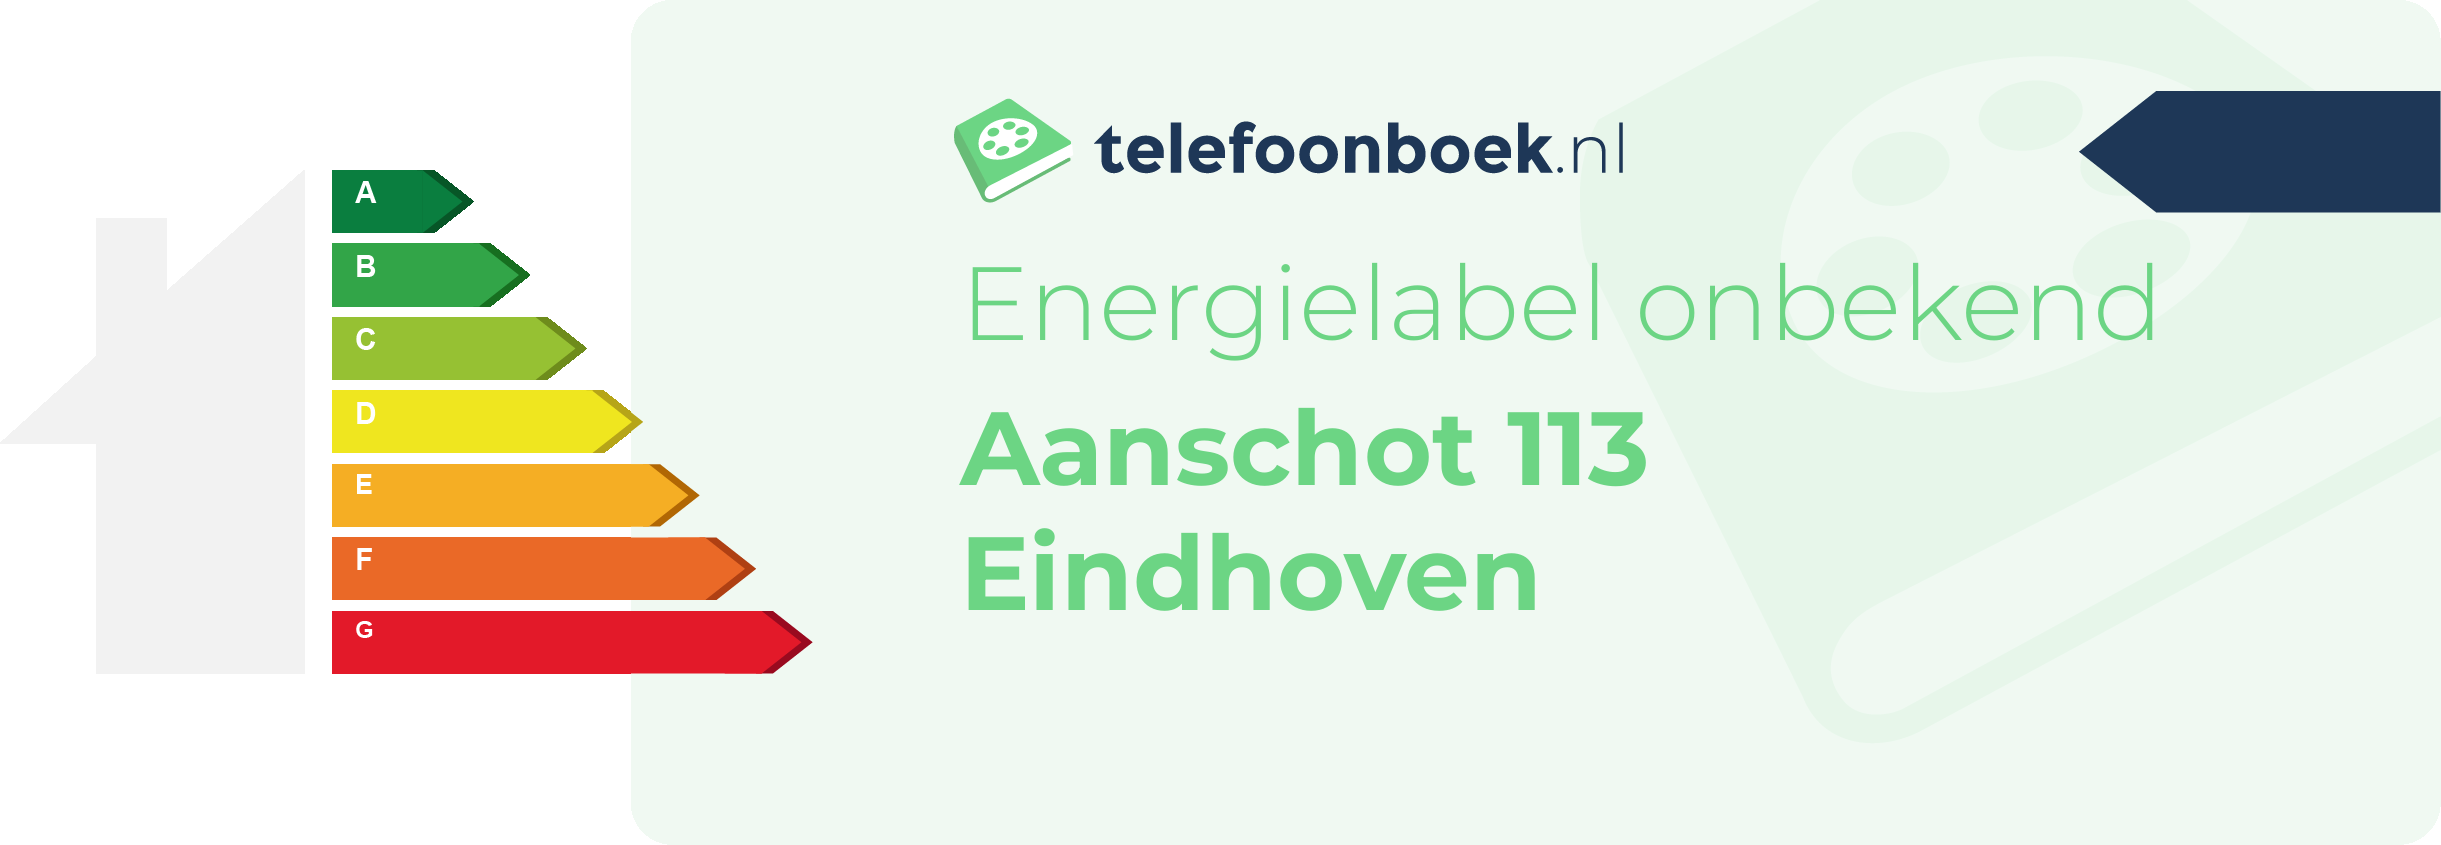 Energielabel Aanschot 113 Eindhoven